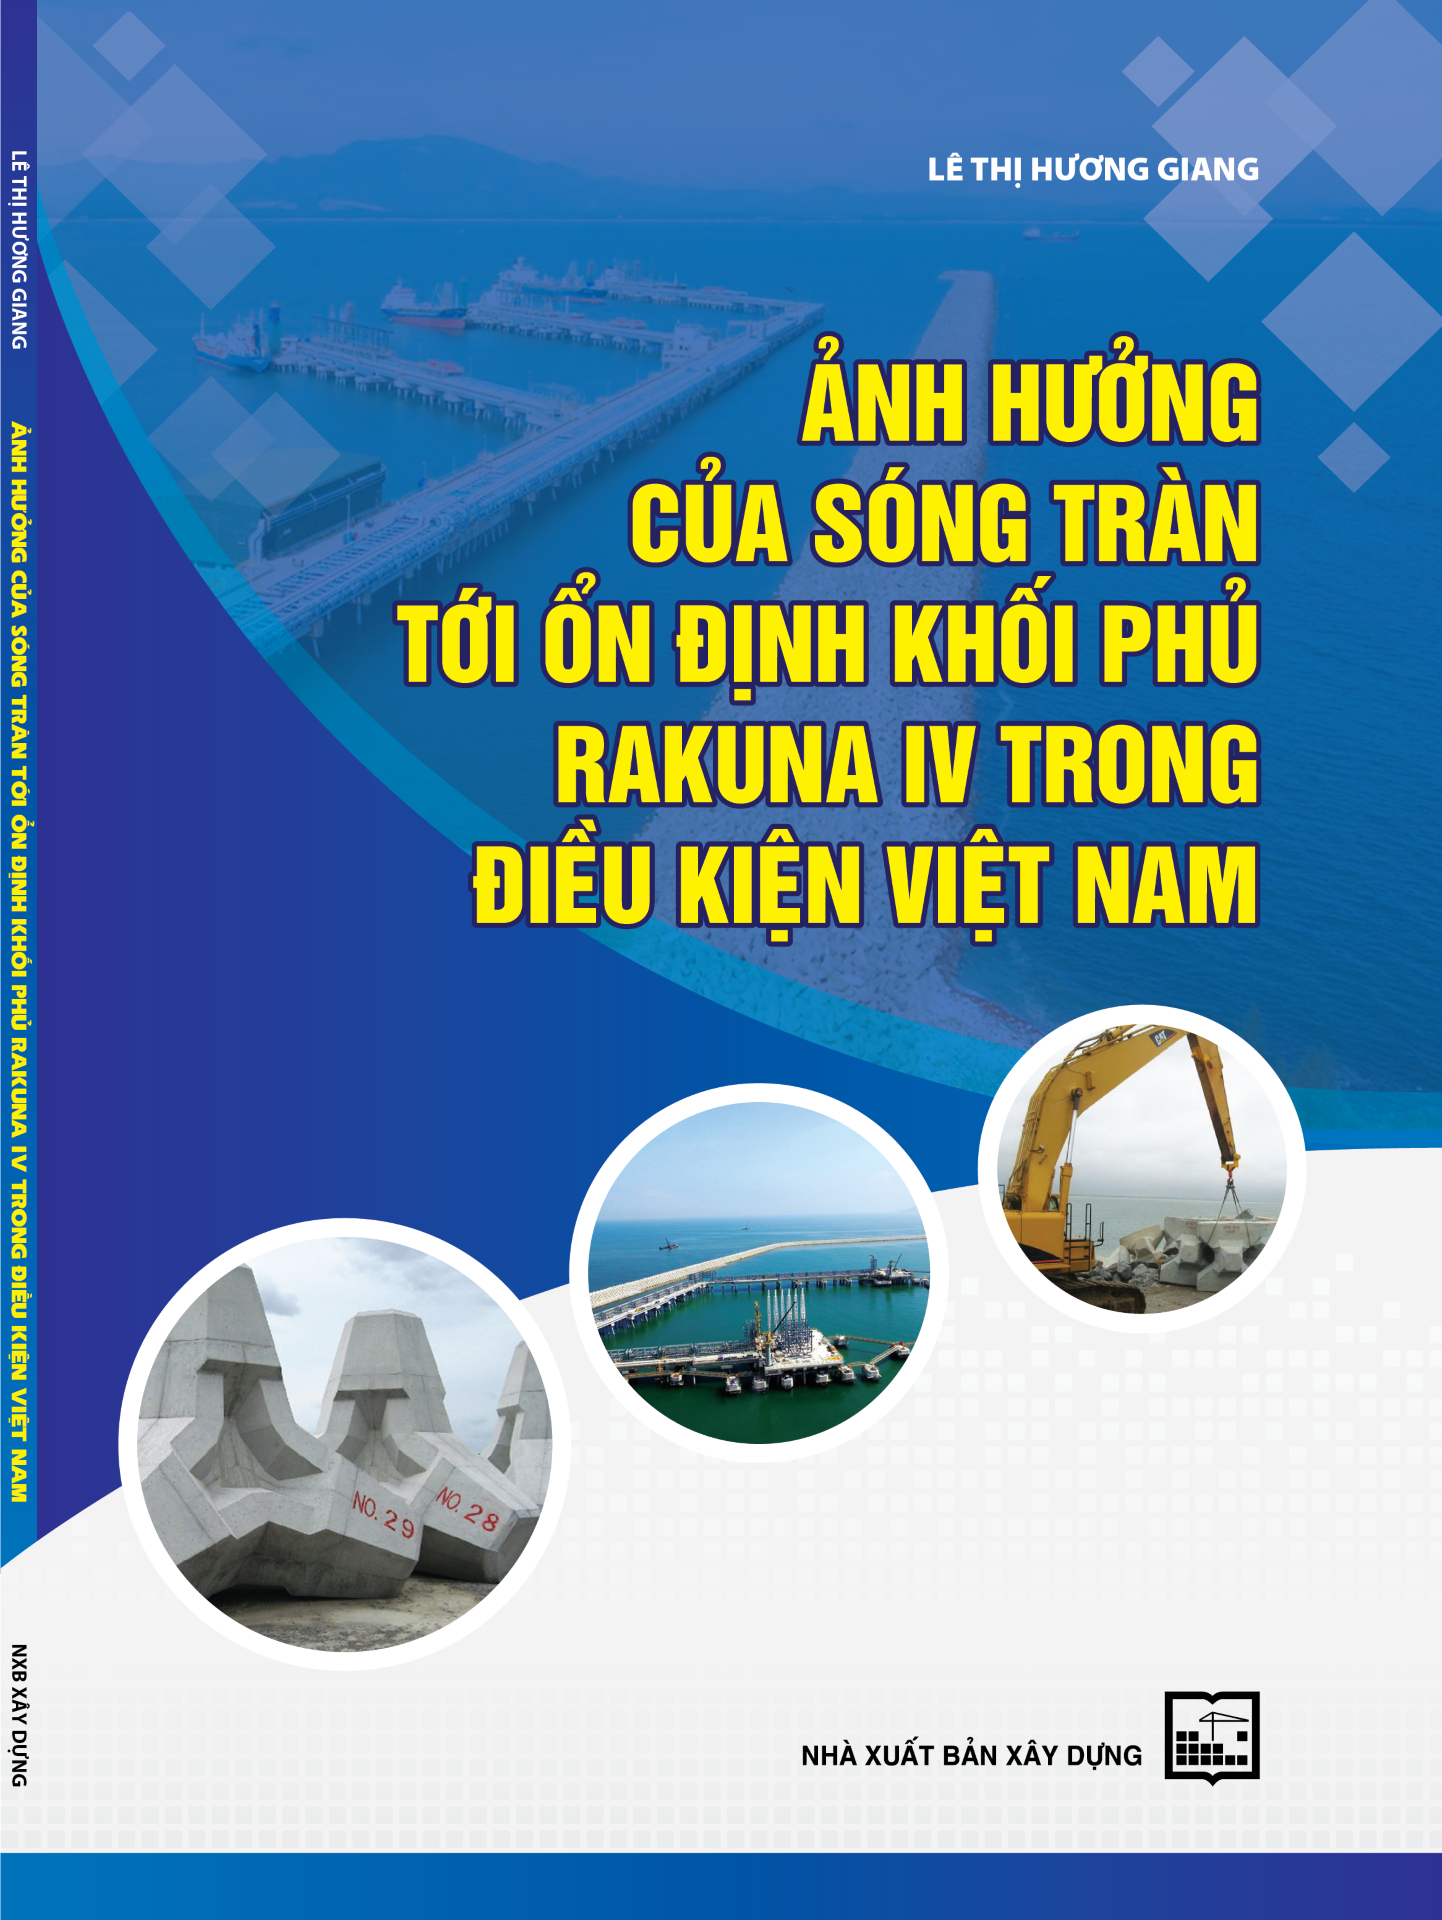 Ảnh hưởng của sóng tràn tới ổn định khối phủ Rakuna IV trong điều kiện Việt Nam